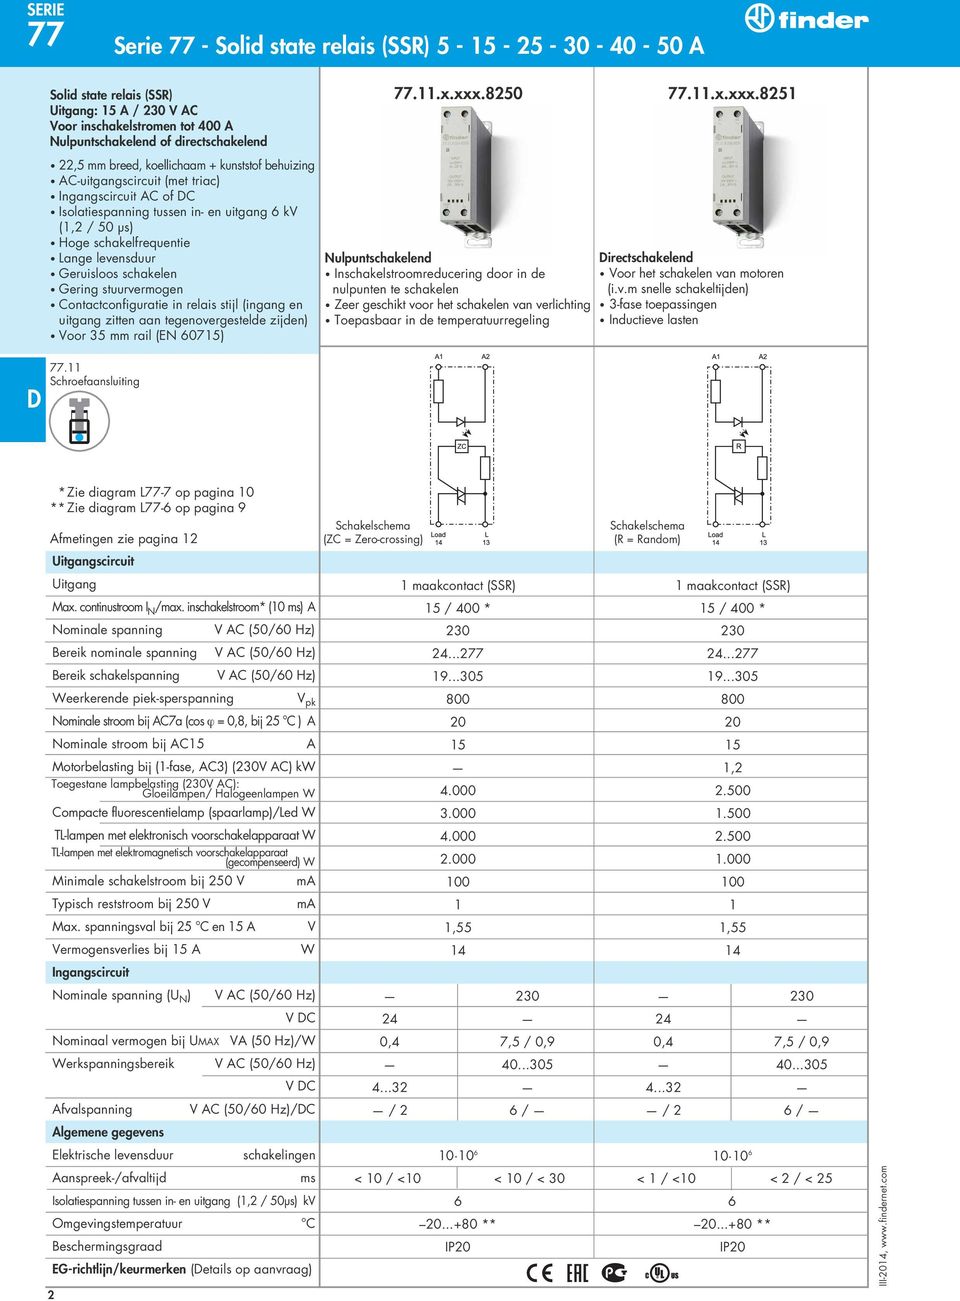 8251 22,5 mm breed, koellichaam + kunststof behuizing AC-uitgangscircuit (met triac) Ingangscircuit AC of C Isolatiespanning tussen in- en uitgang 6 kv (1,2 / 50 μs) Hoge schakelfrequentie Lange